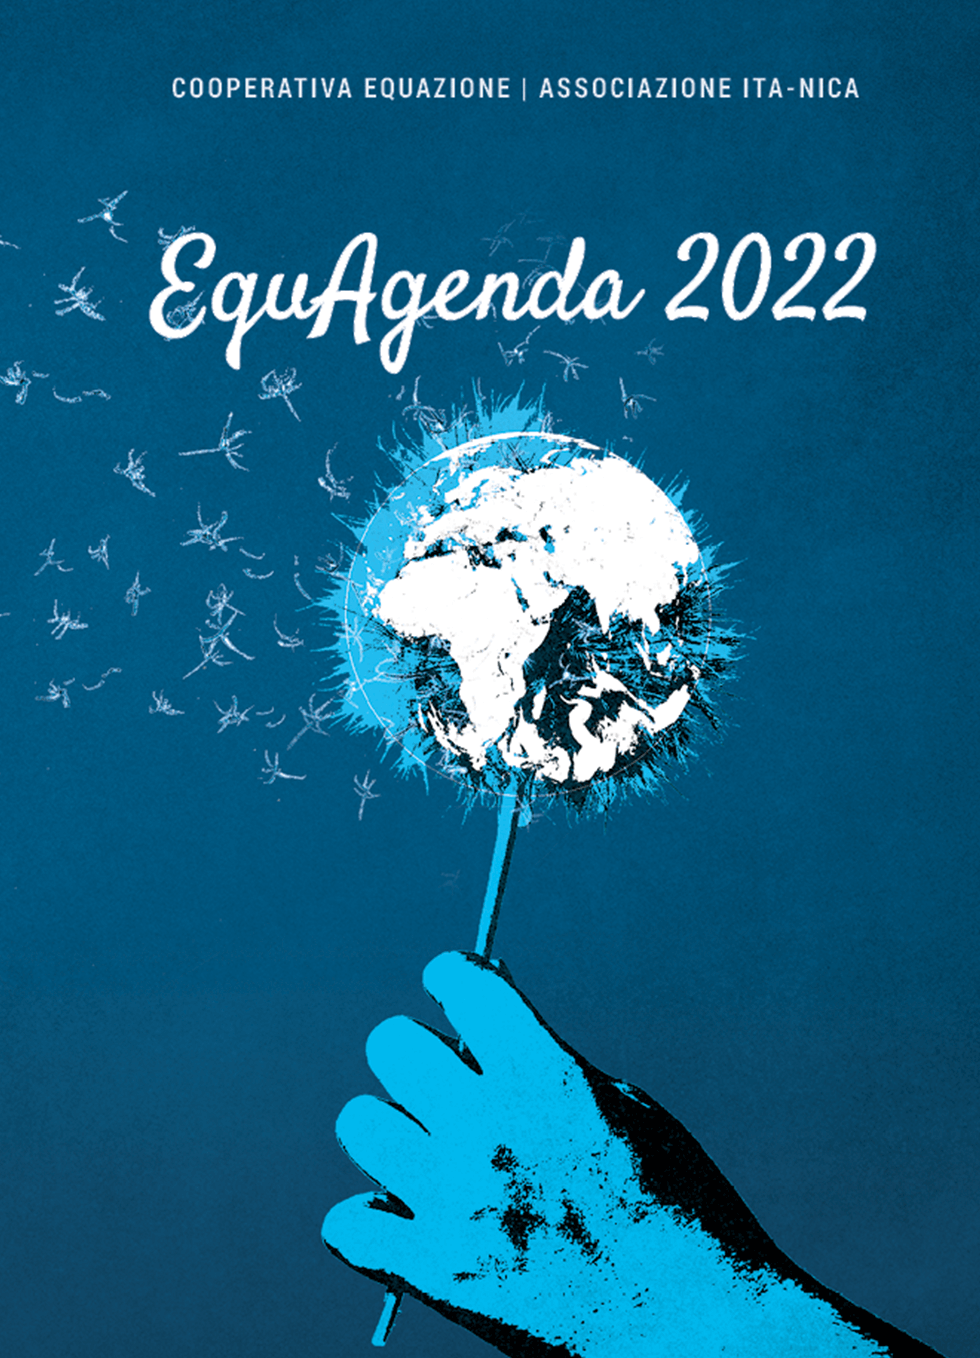 EquAgenda 2022